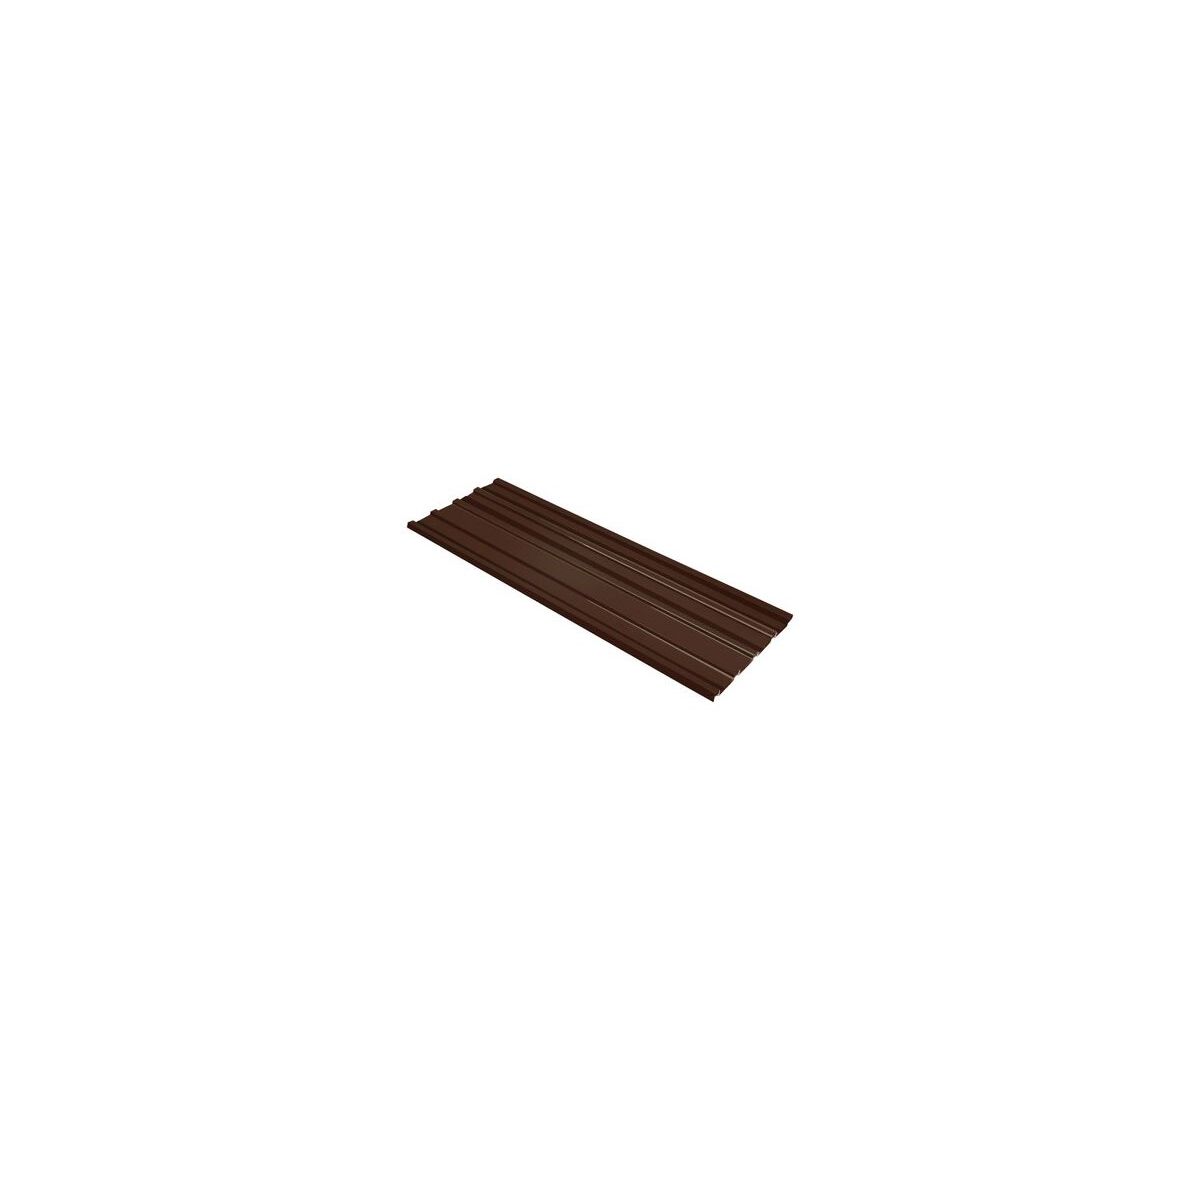 Tôle de toiture acier galvanisé - Ral 8019 (brun chocolat) - Longueur 4m